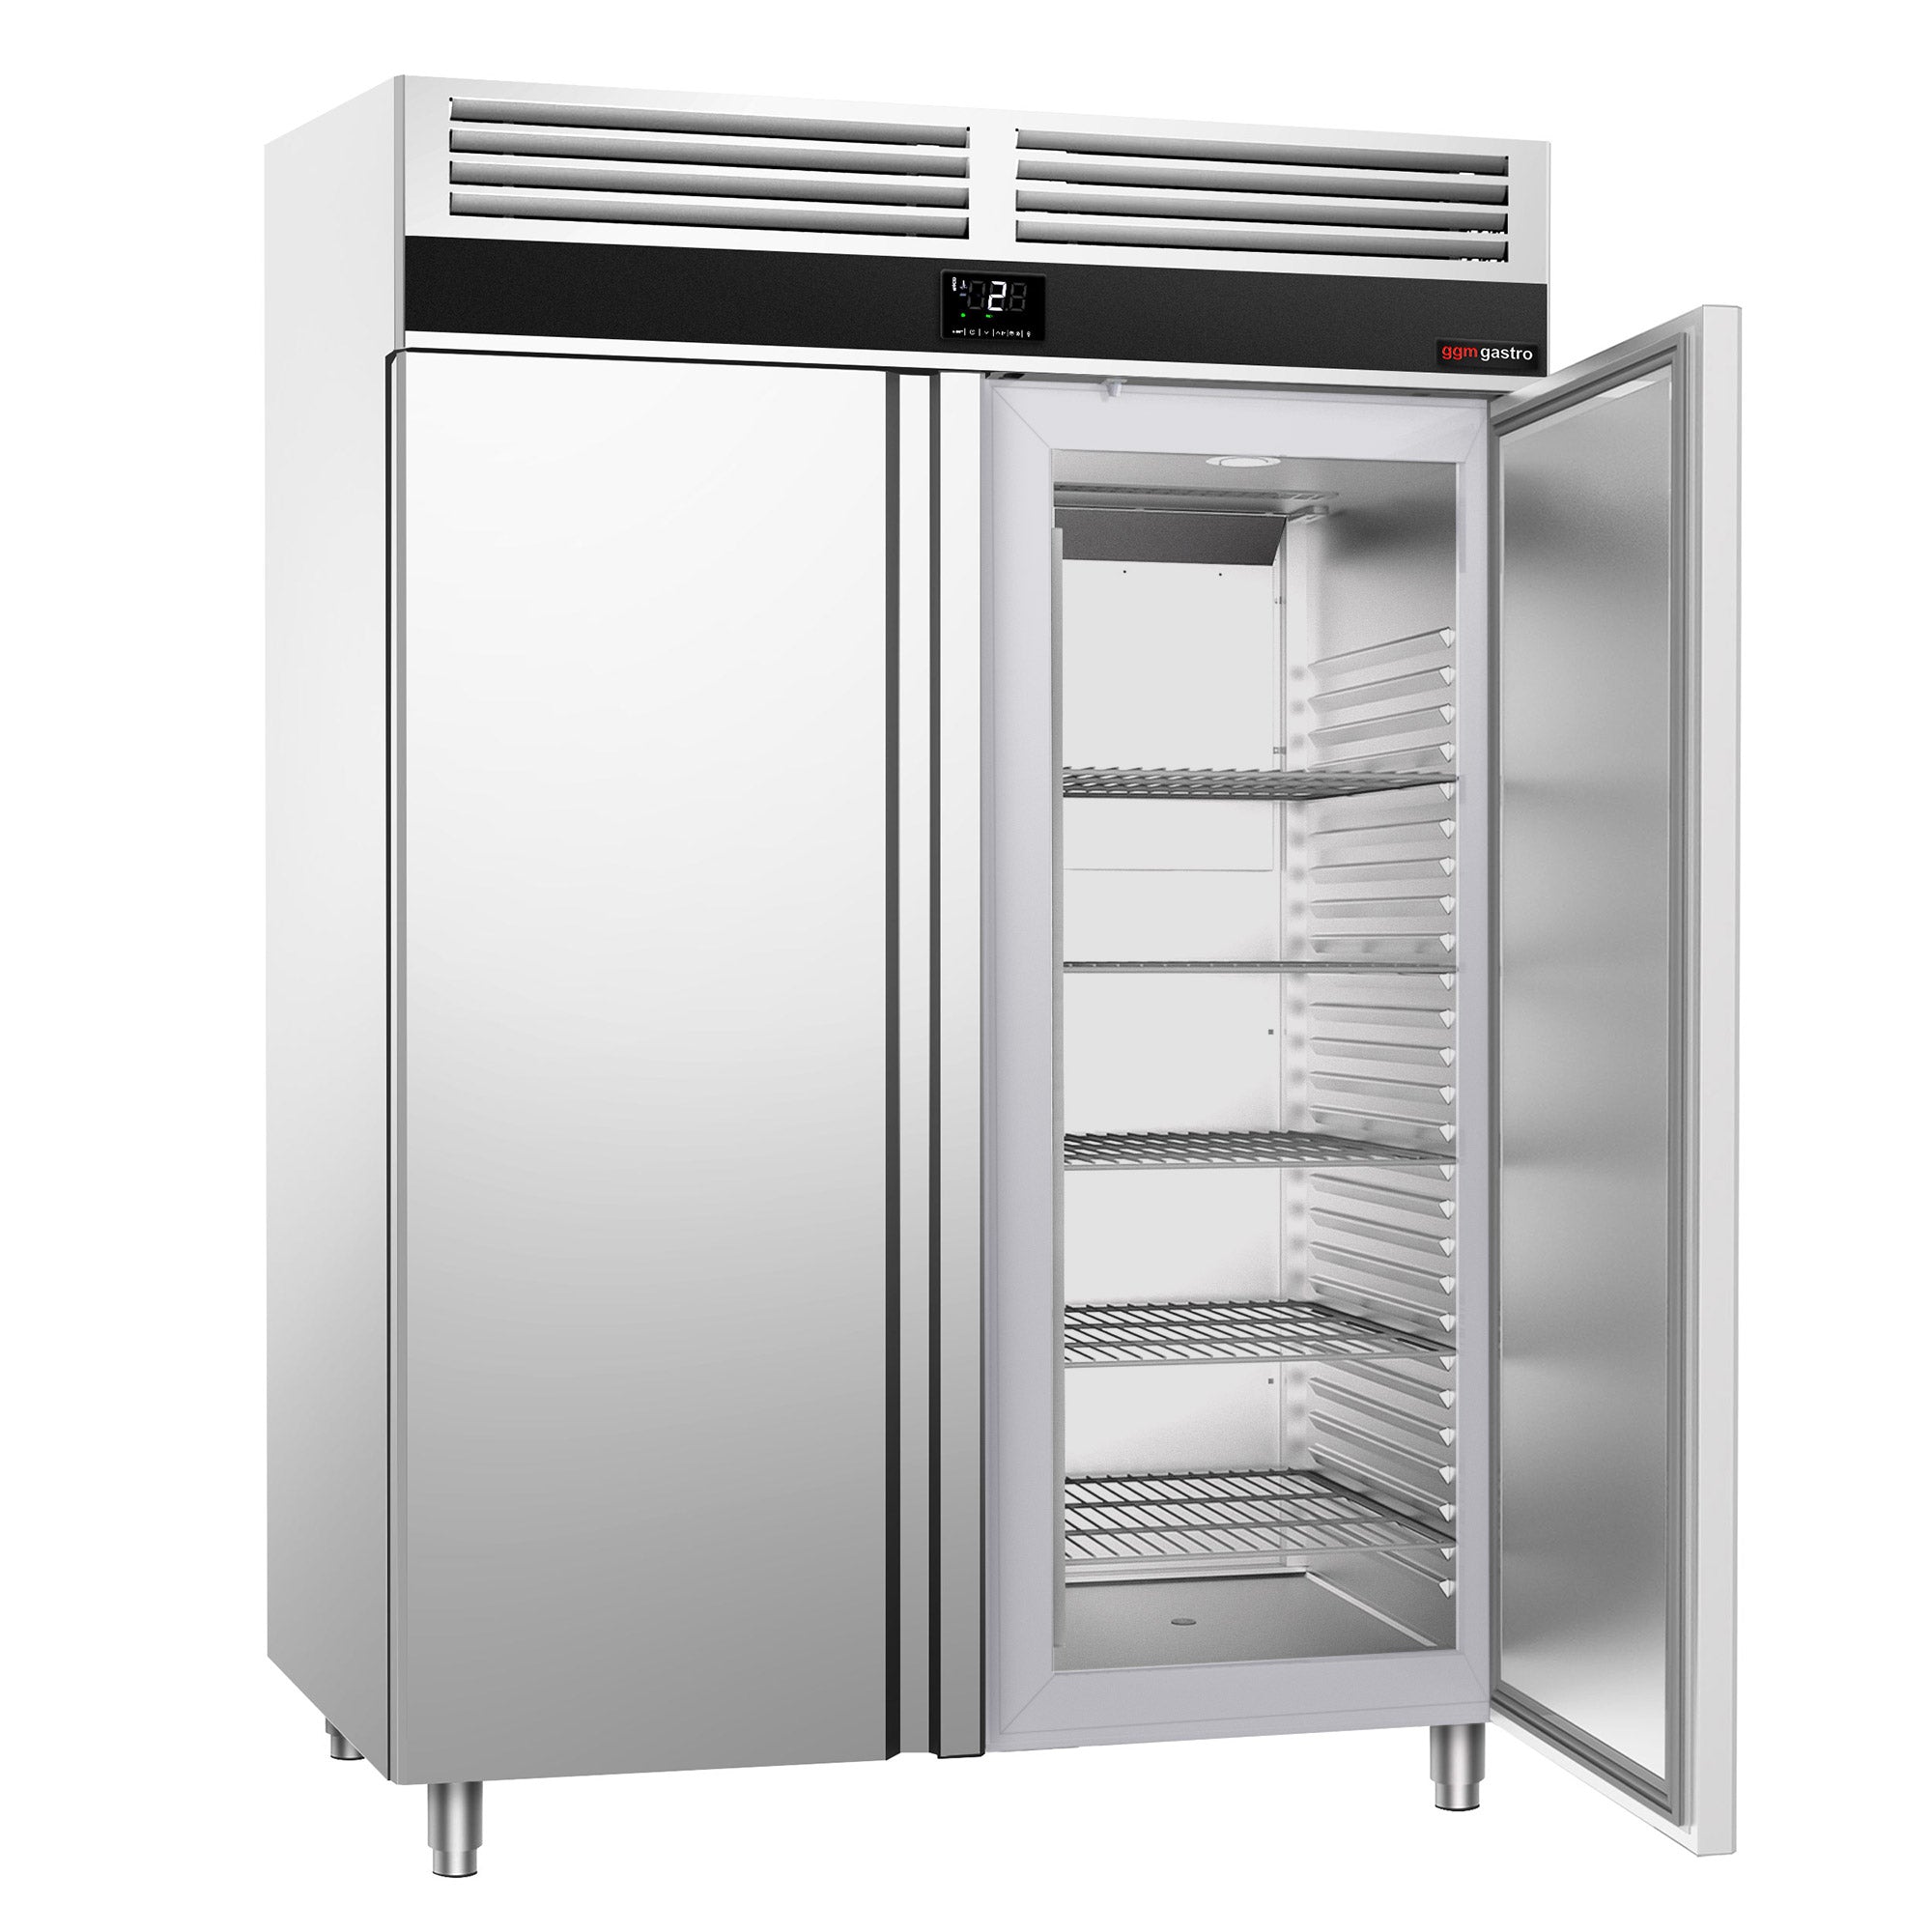 Køleskab - 1,4 x 0,81 m - 1400 liter - med 2 døre